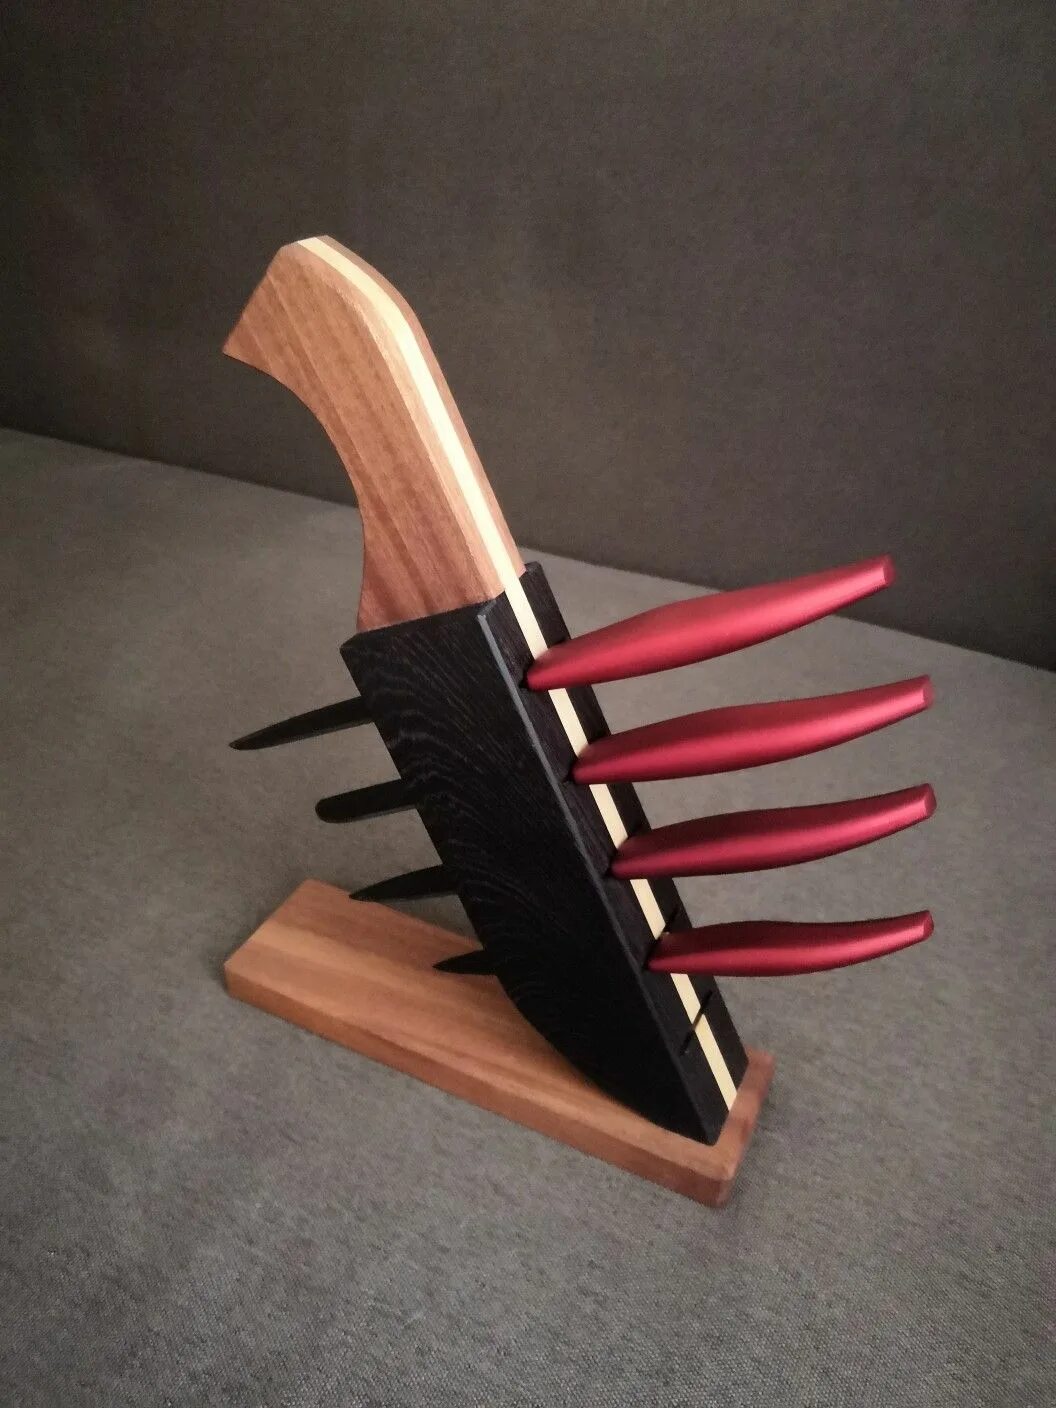 Деревянные кухонные ножи. Подставка для ножей из дерева. Деревянная подставка под ножи. Необычные подставки для ножей. Дизайнерская подставка для ножей.